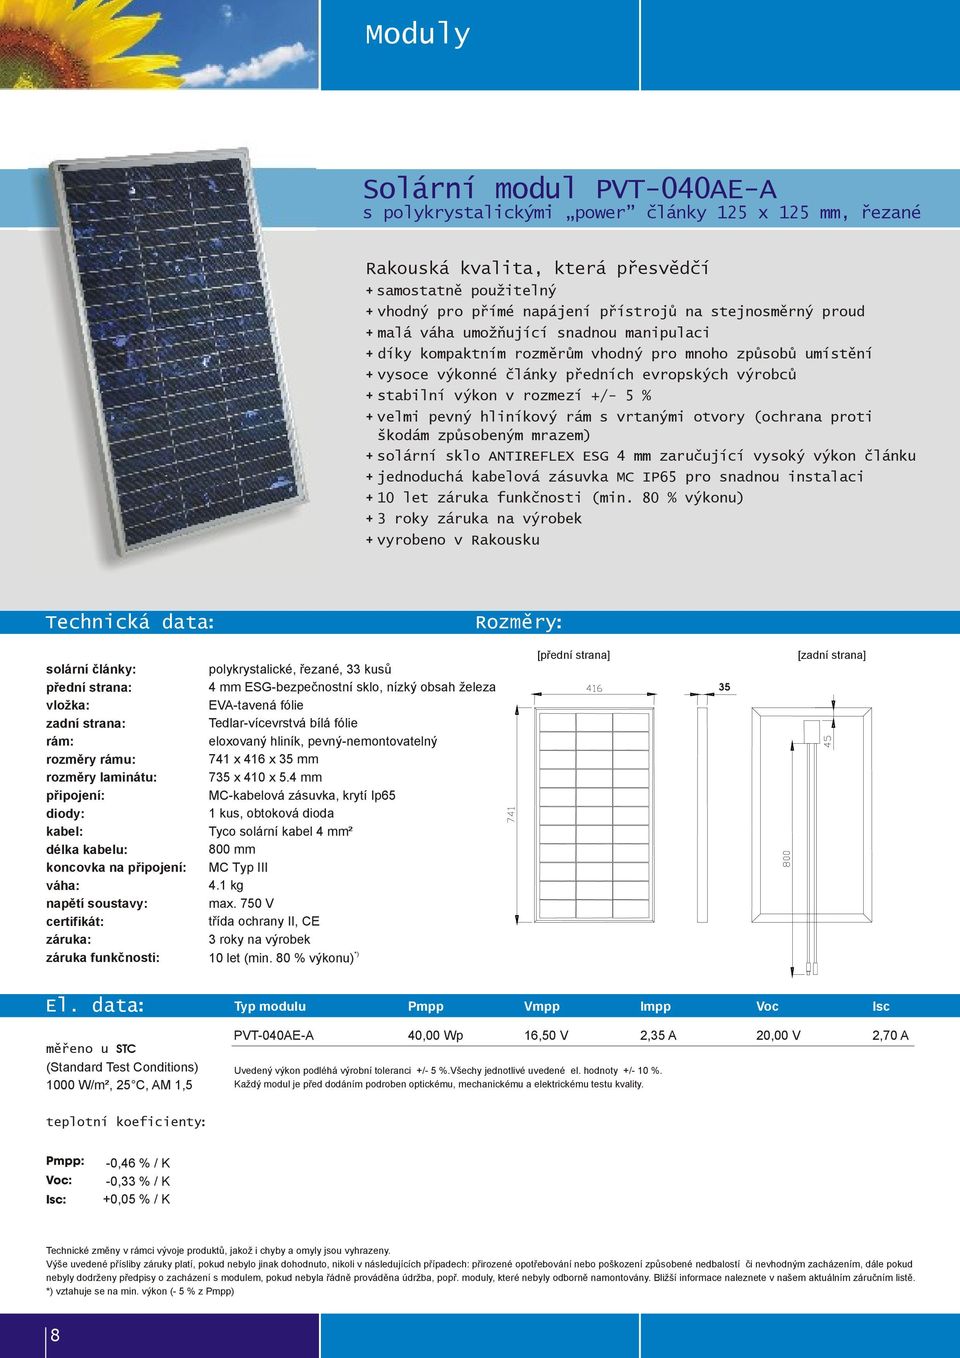 velmi pevný hliníkový rám s vrtanými otvory (ochrana proti škodám způsobeným mrazem) + solární sklo ANTIREFLEX ESG 4 mm zaručující vysoký výkon článku + jednoduchá kabelová zásuvka MC IP65 pro